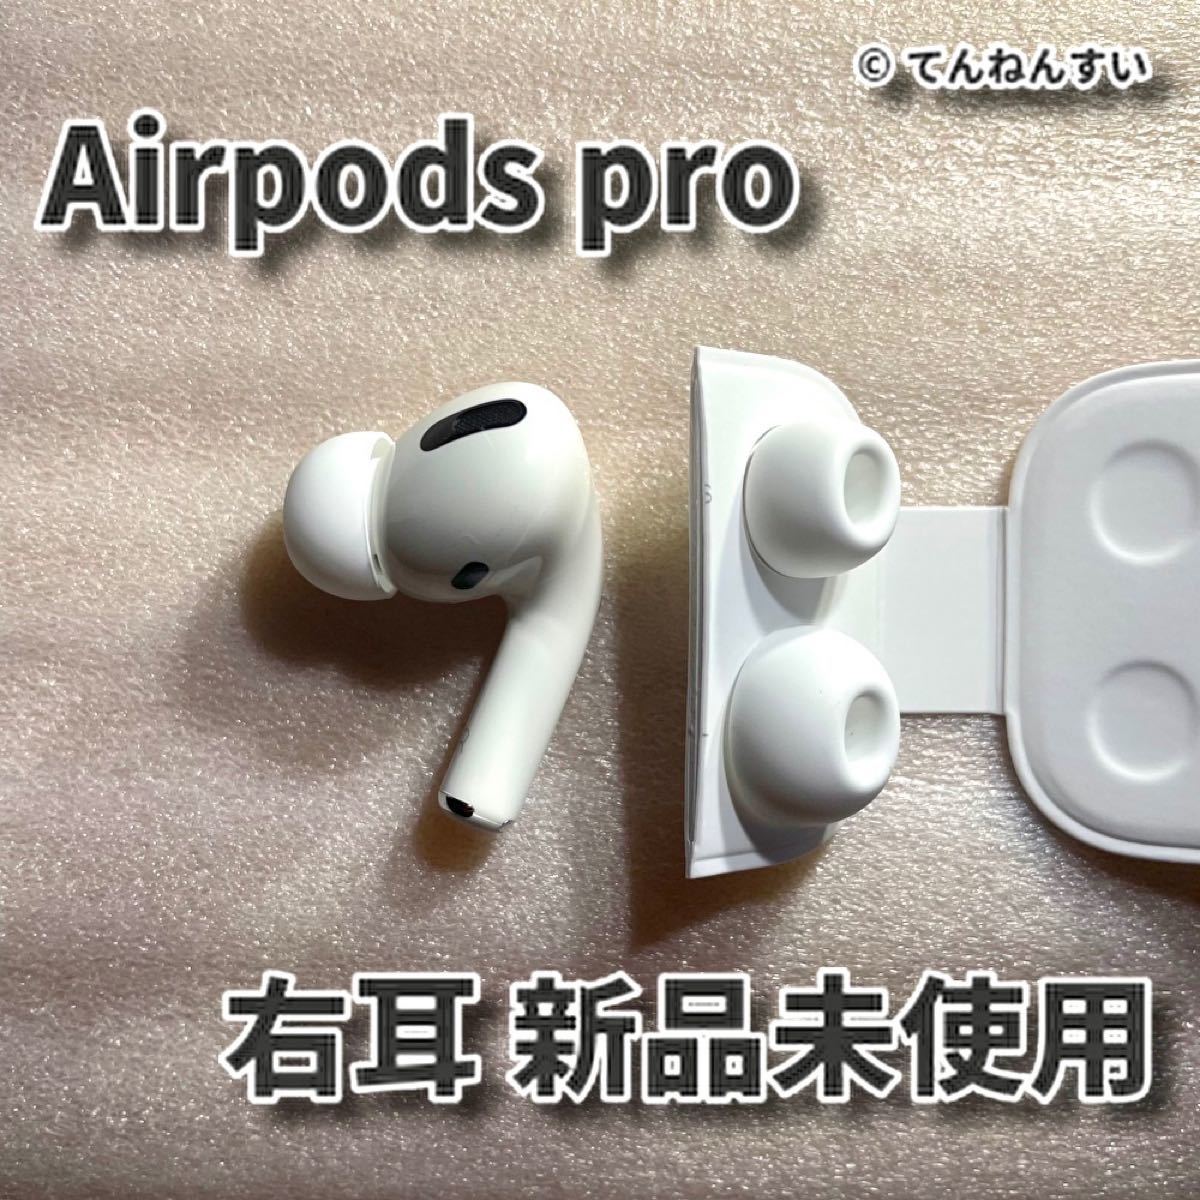 割引も実施中 AirPods Pro イヤホン 両耳 のみ asakusa.sub.jp